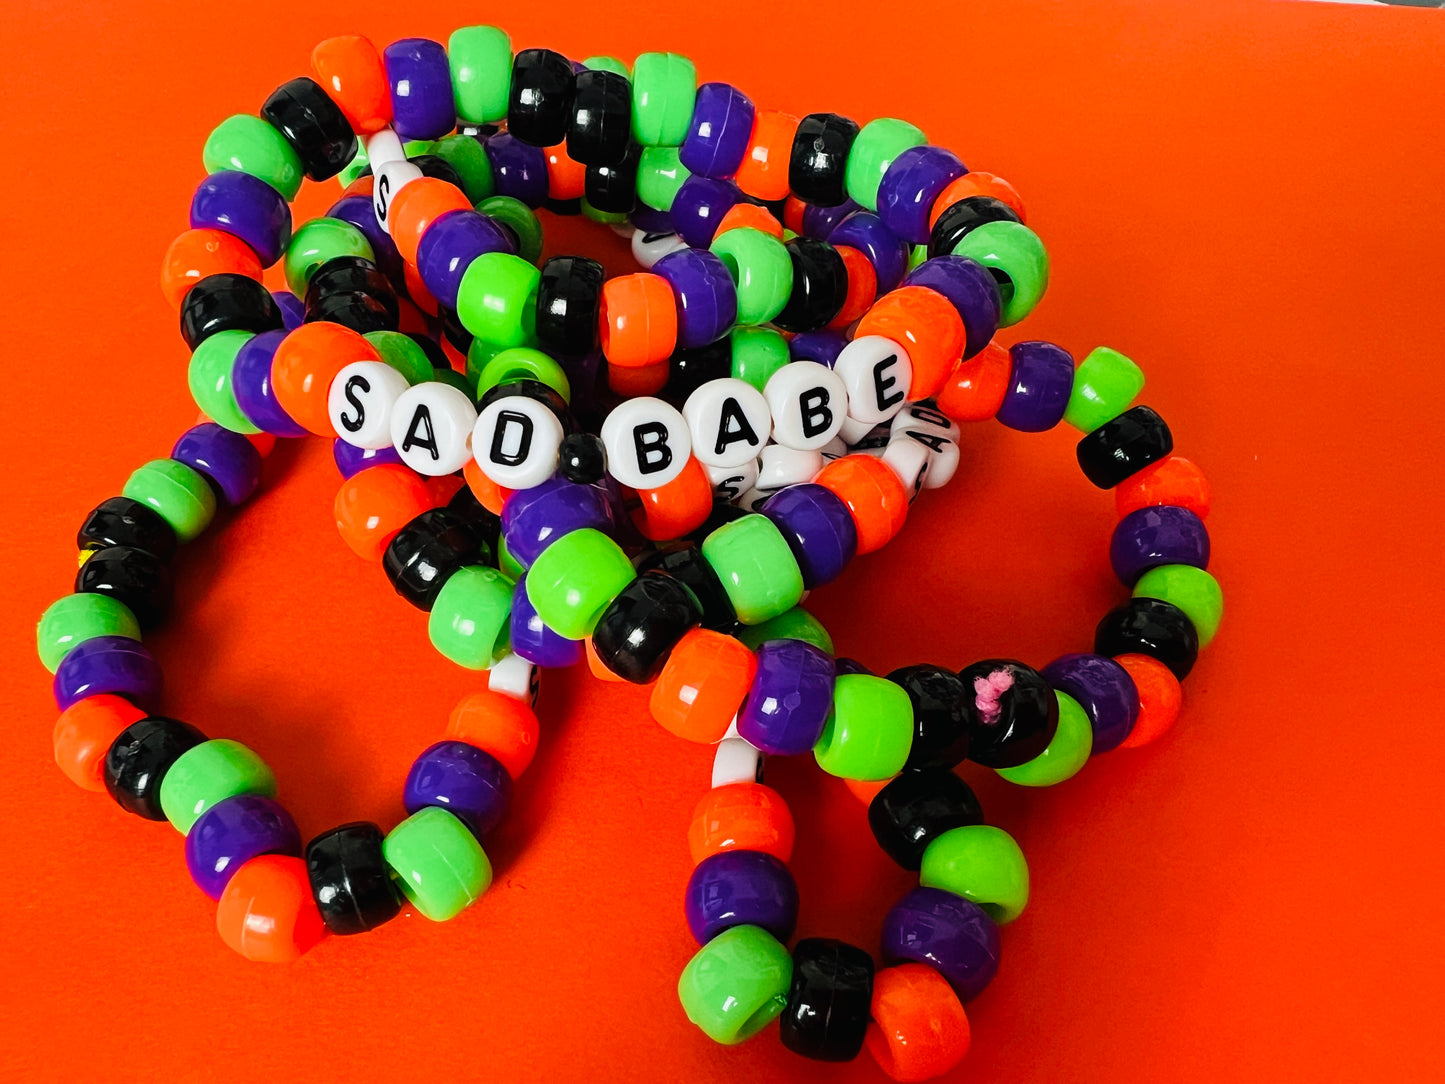 Sad Babe Bracelets